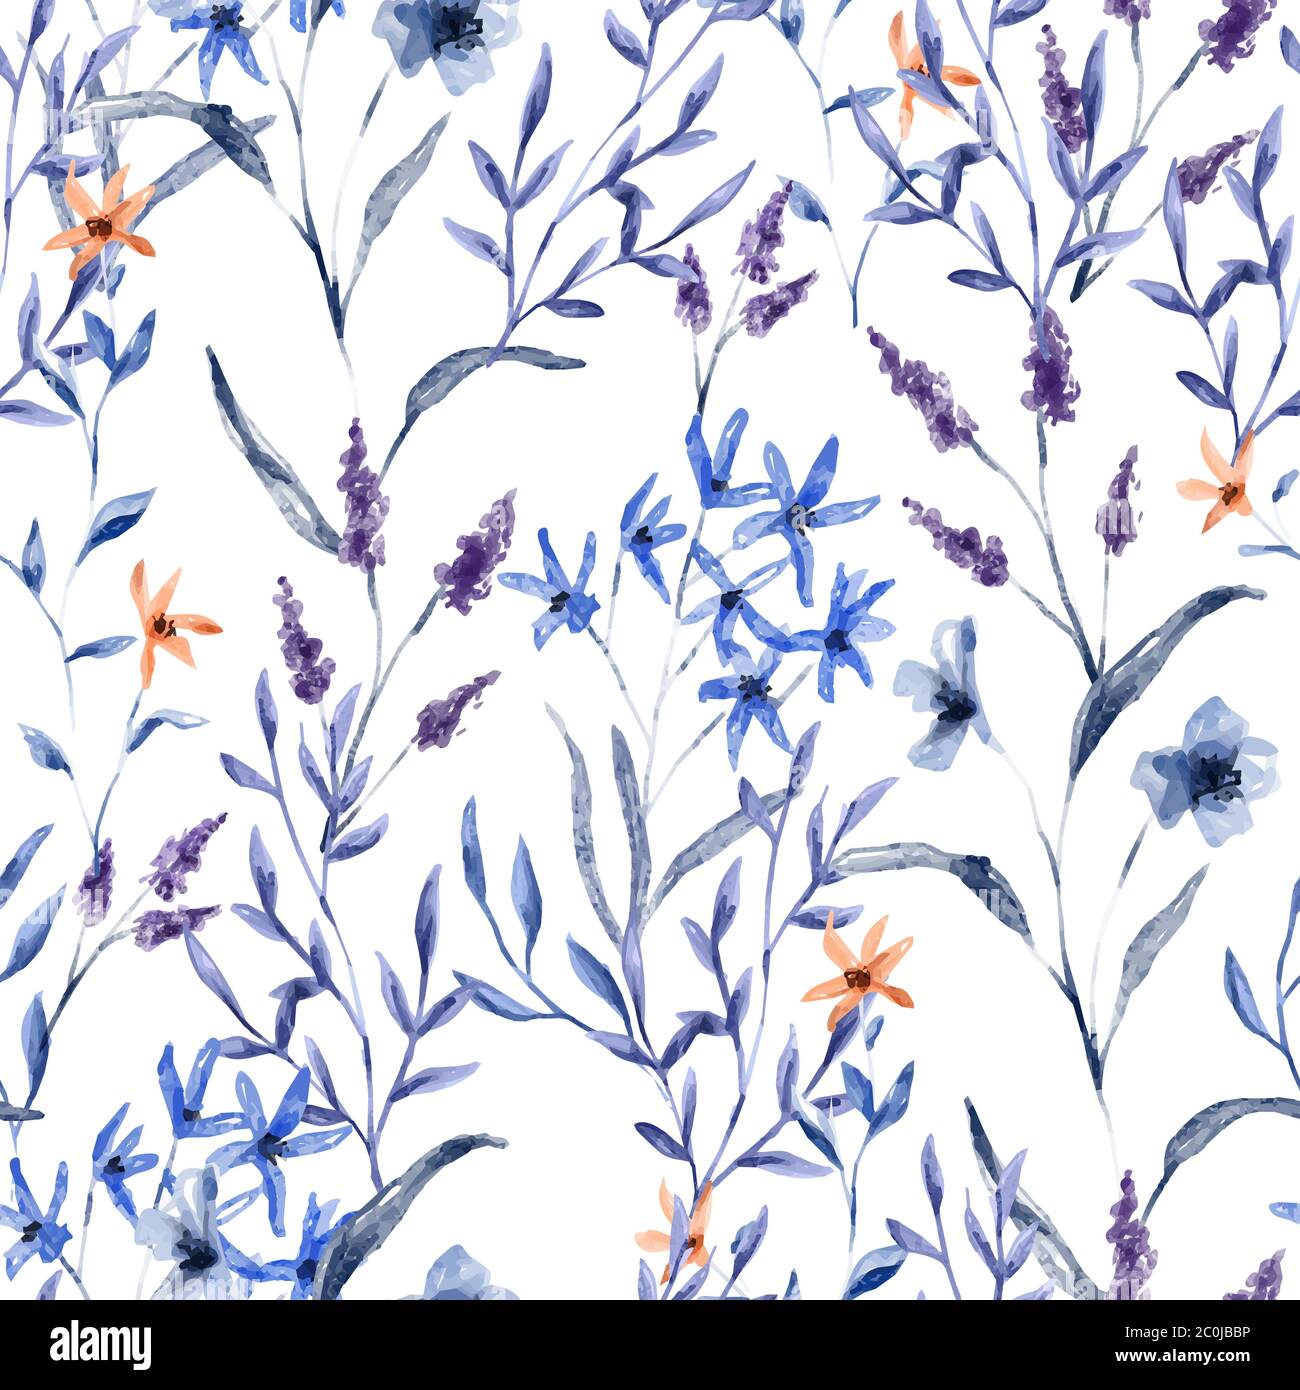 Vintage floral Aquarell nahtlose Muster, handgezeichnete Frühling Blume Hintergrund enthält wilde Pflanze, Lavendel und Blatt Zweig. Stock Vektor